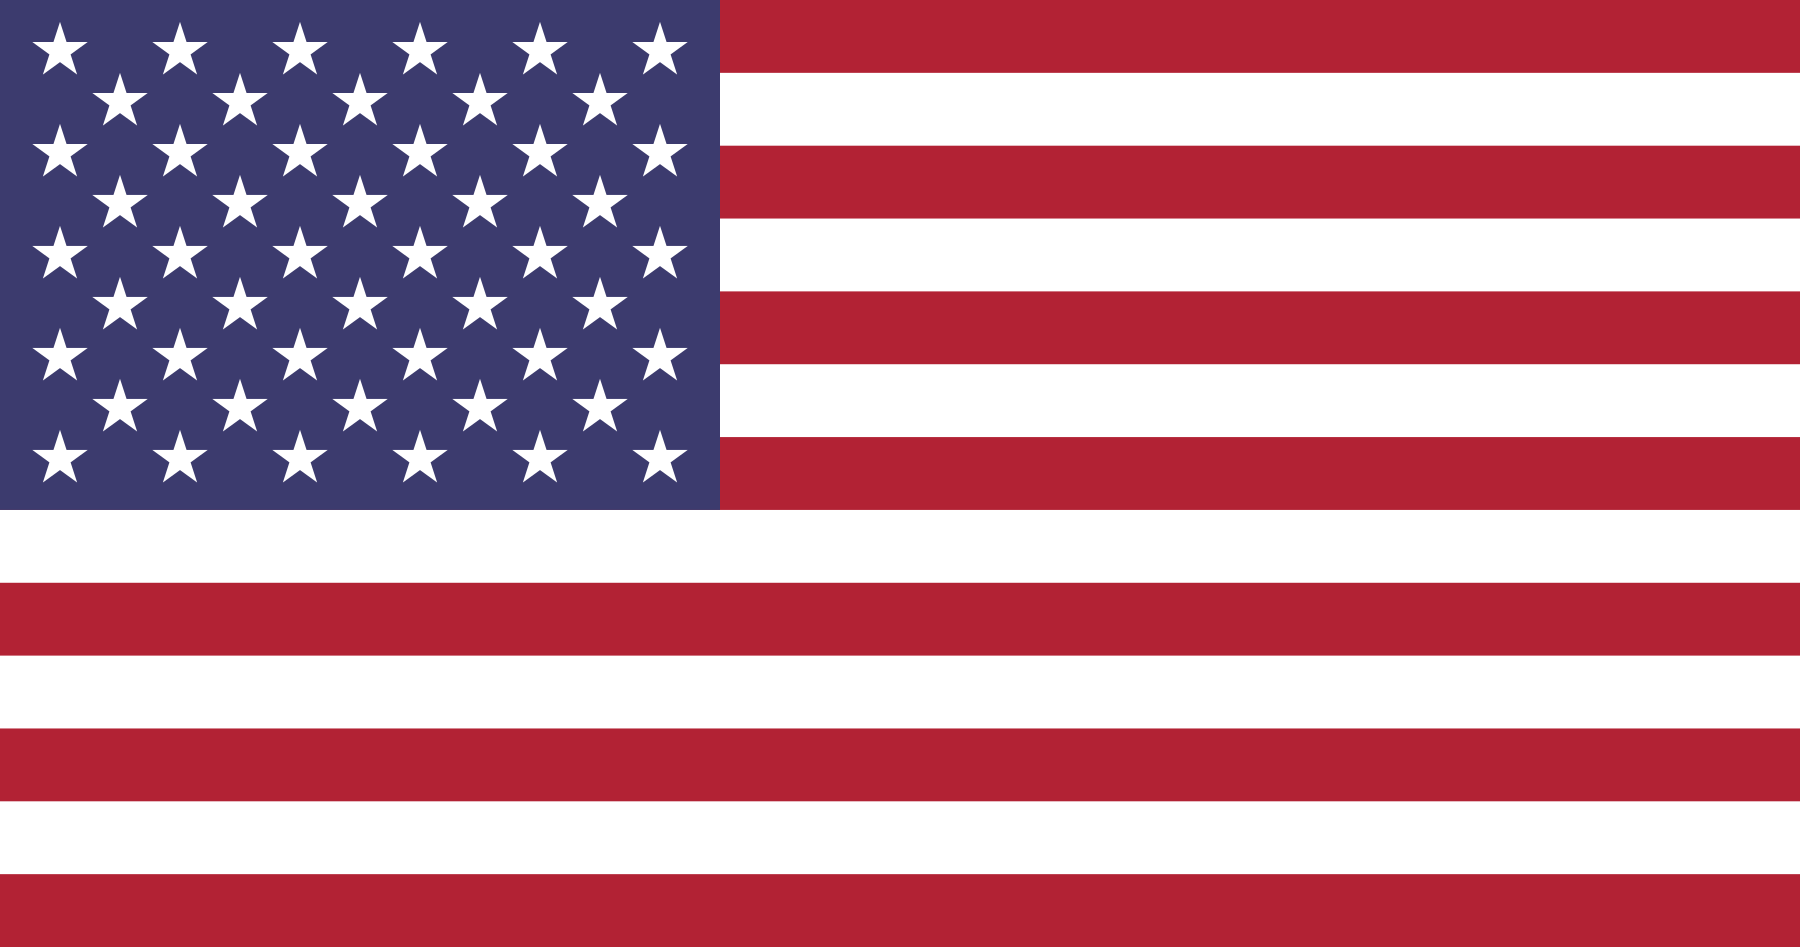 bandeira dos estados unidos eua 1 - Bandeira dos Estados Unidos da América (EUA)